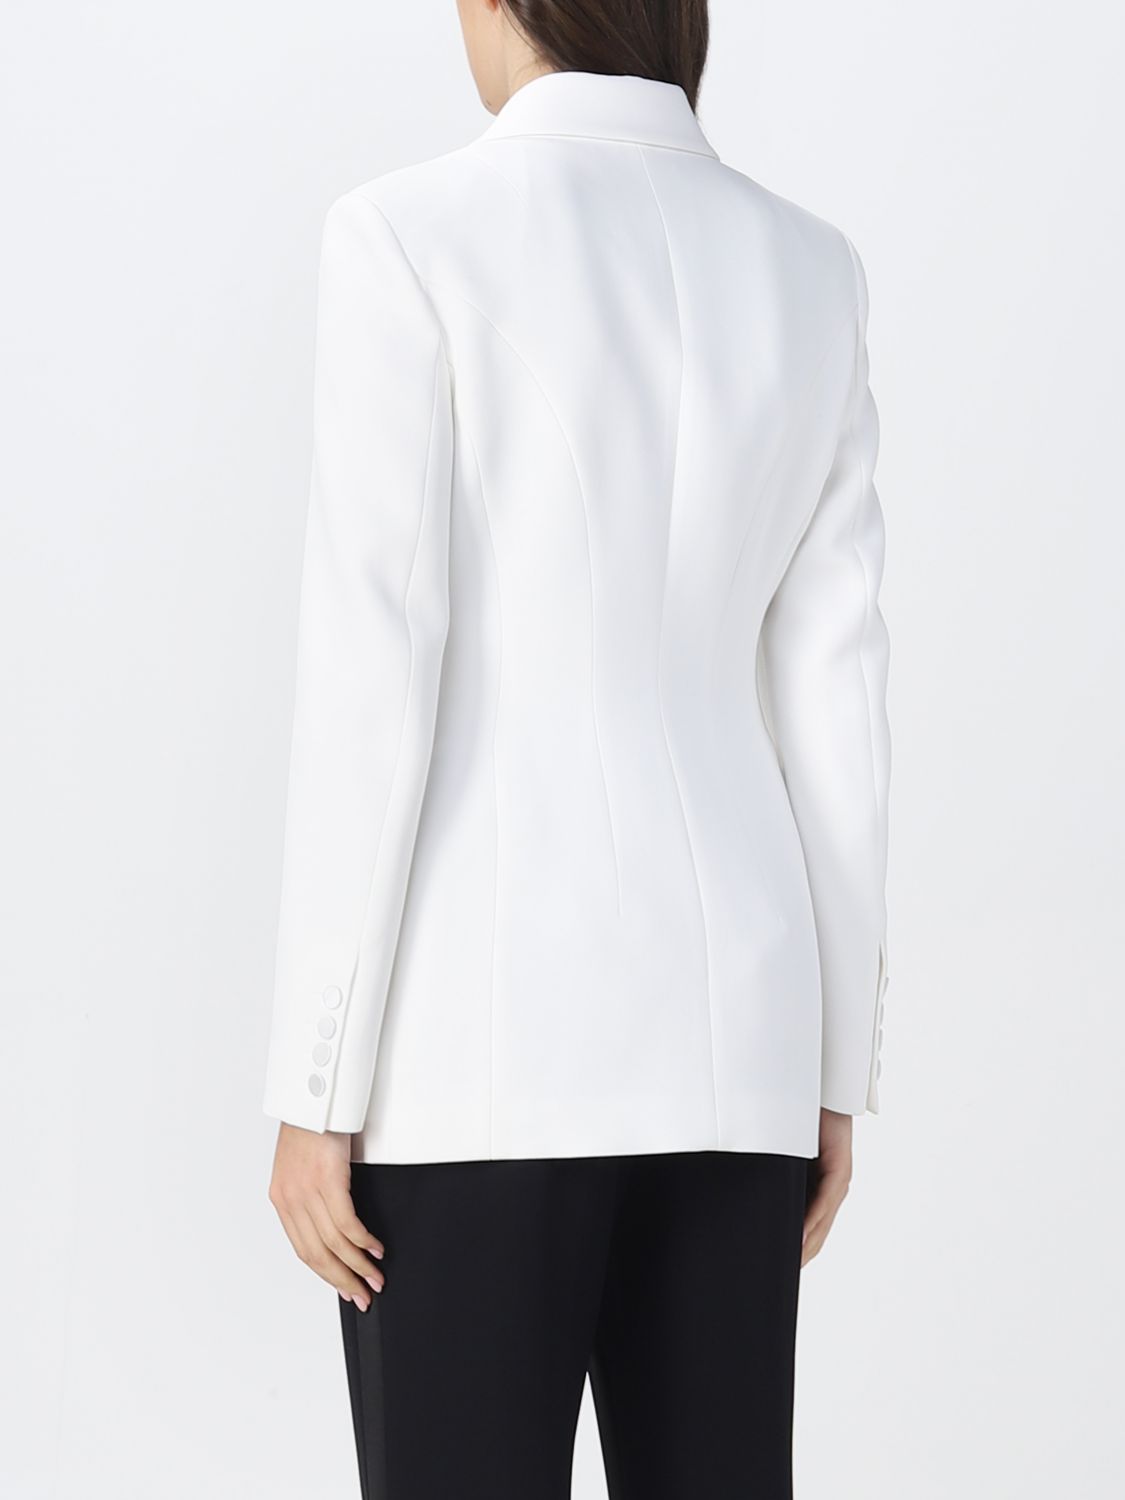 ERMANNO SCERVINO: blazer for woman - White 1 | Ermanno Scervino blazer ...